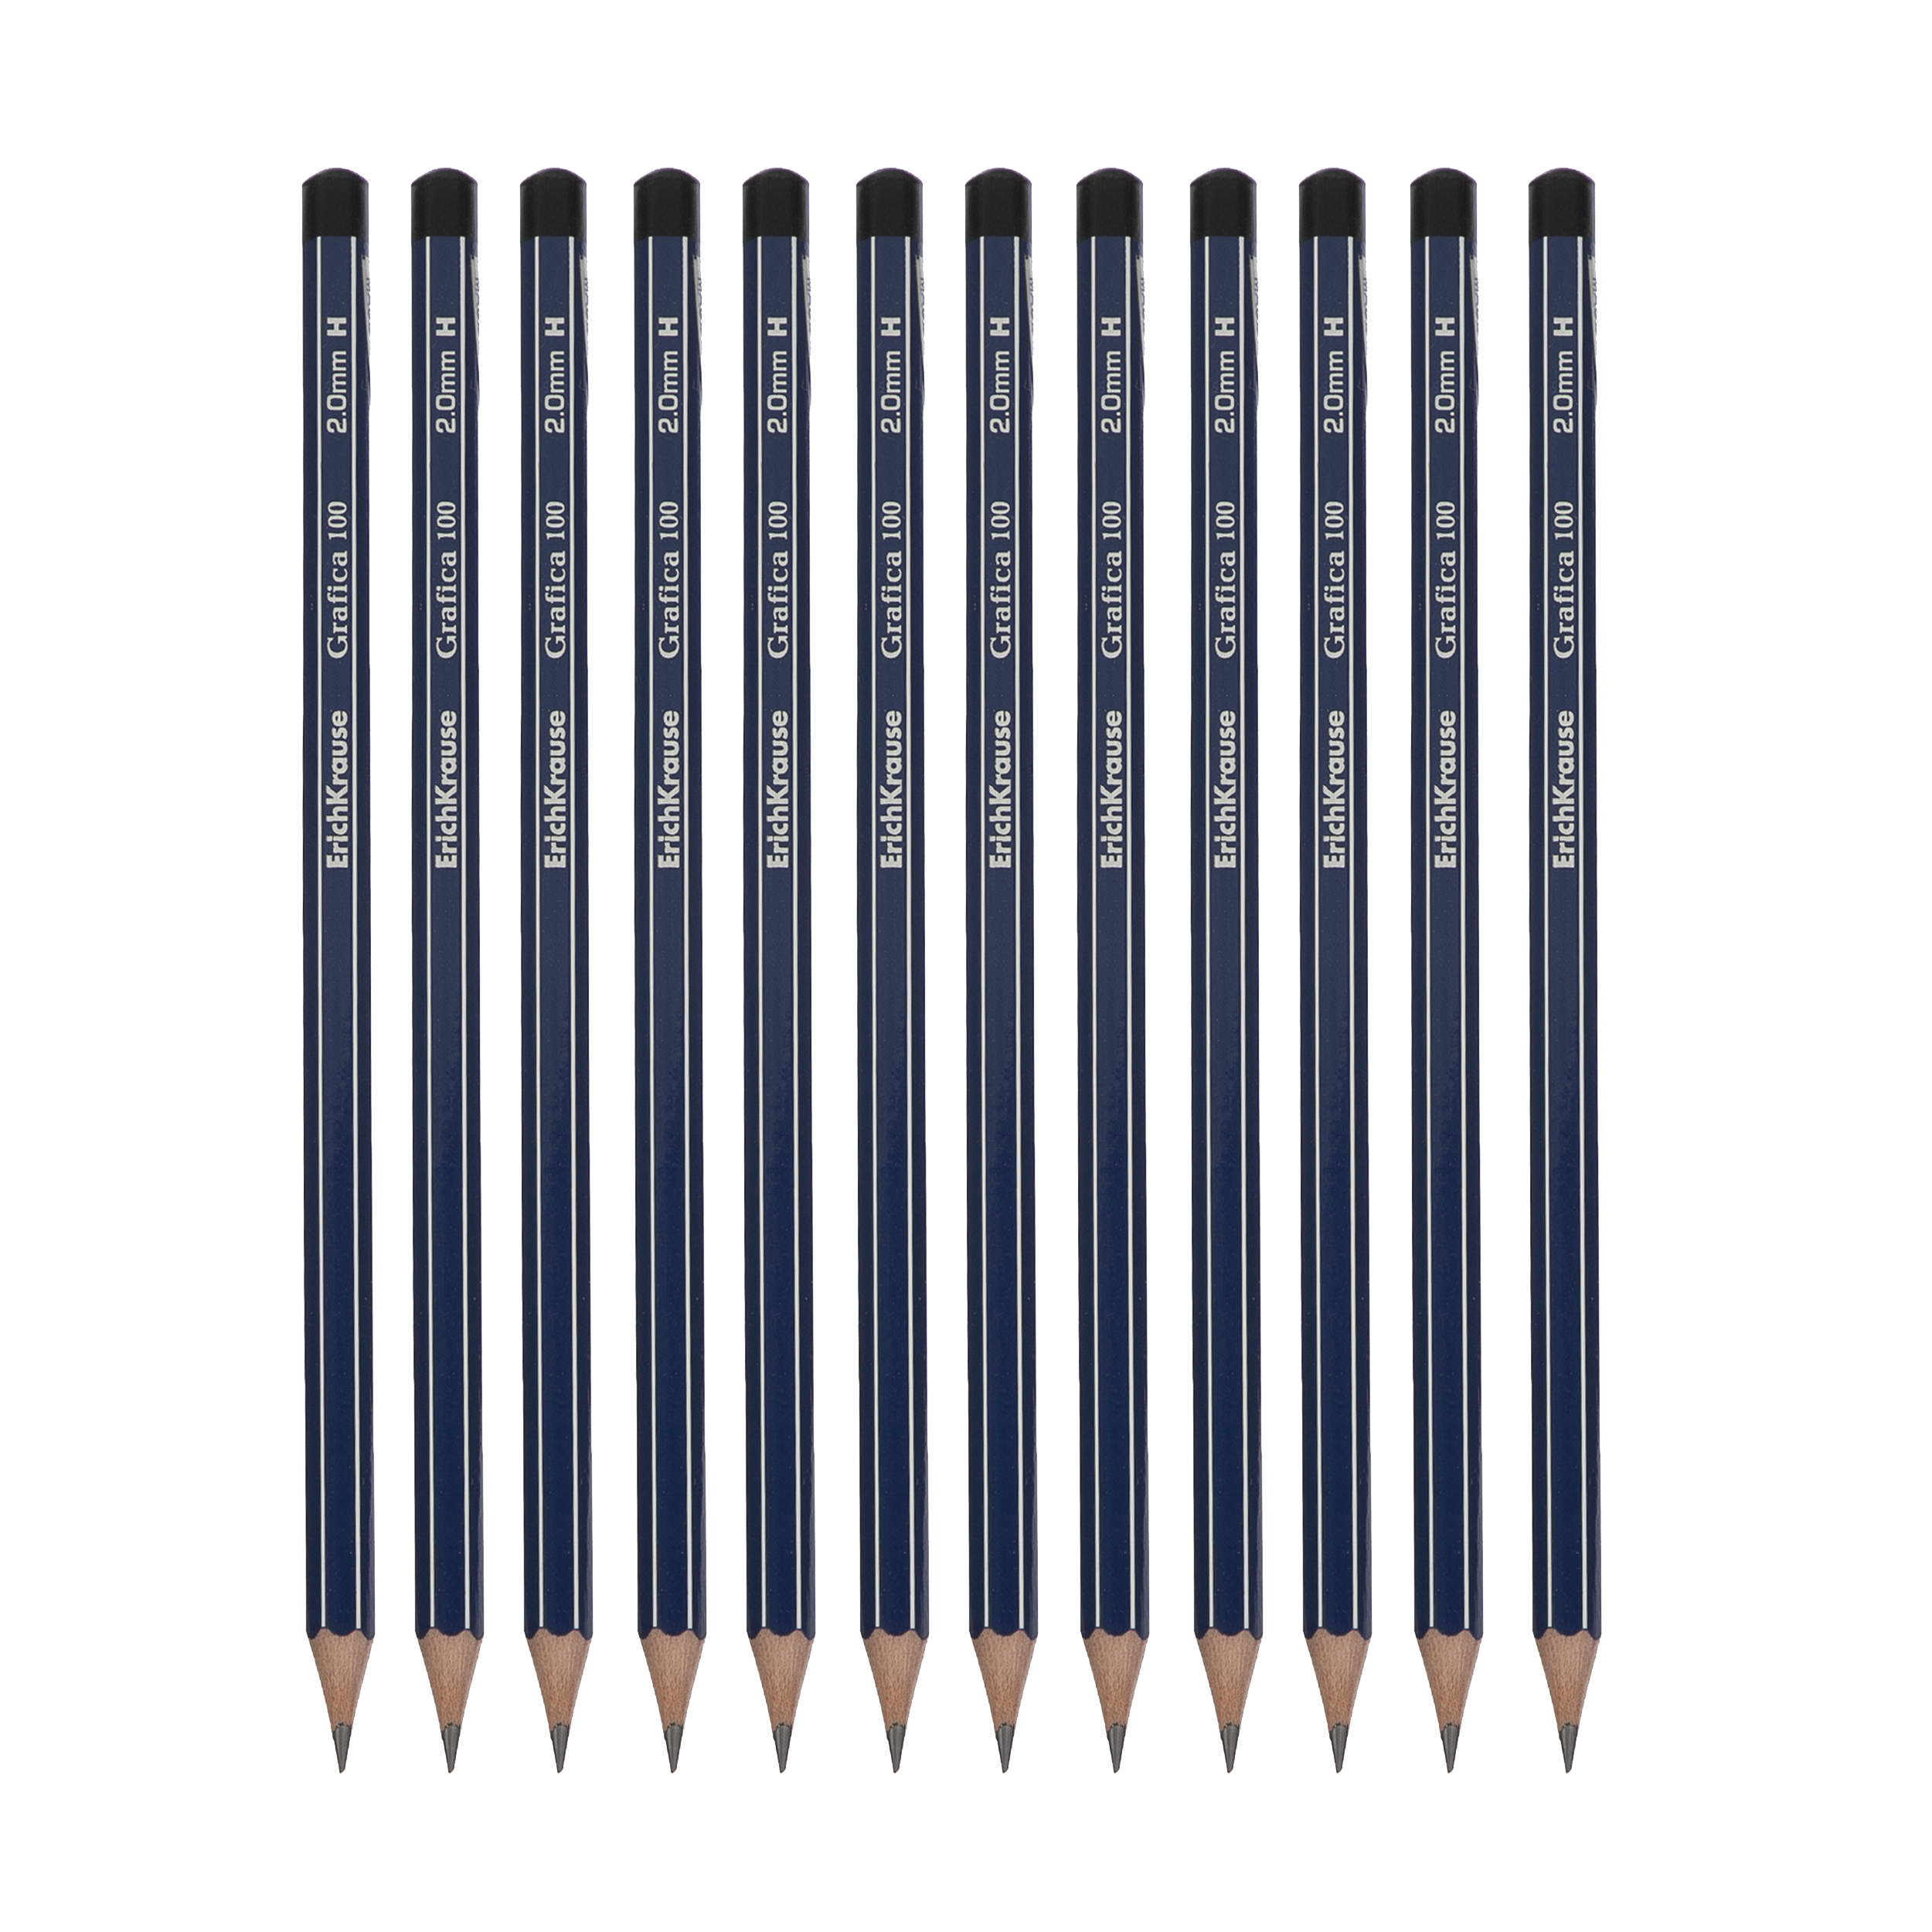 مداد مشکی اریک کراوزه مدل grafica 100 کد 32848 بسته 12 عددی